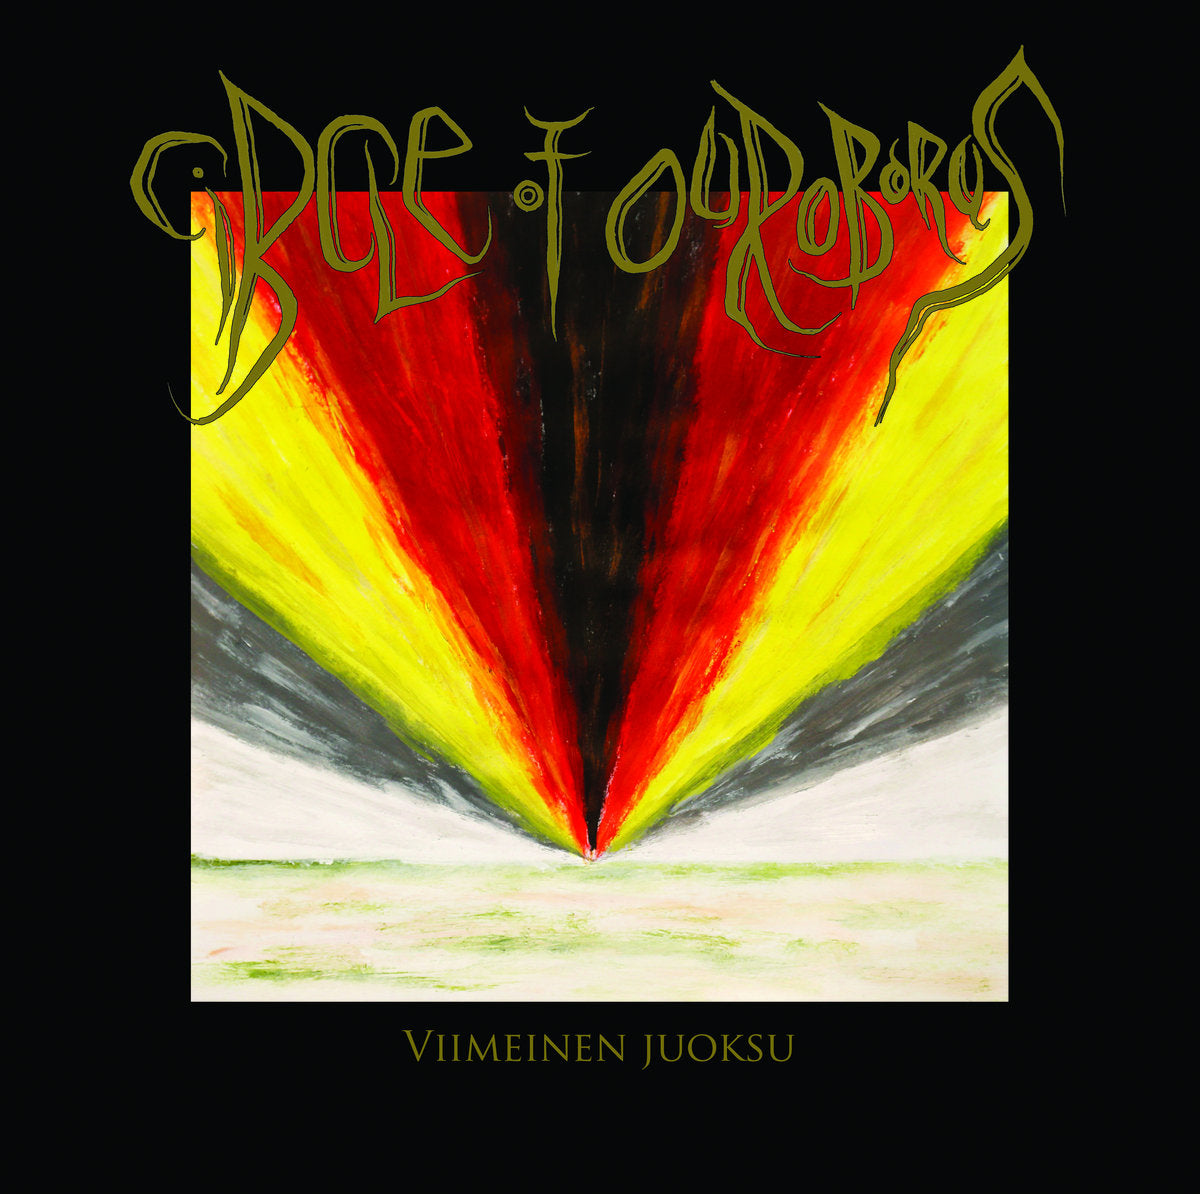 Circle of Ouroborus - Viimeinen Juoksu (Gold vinyl)